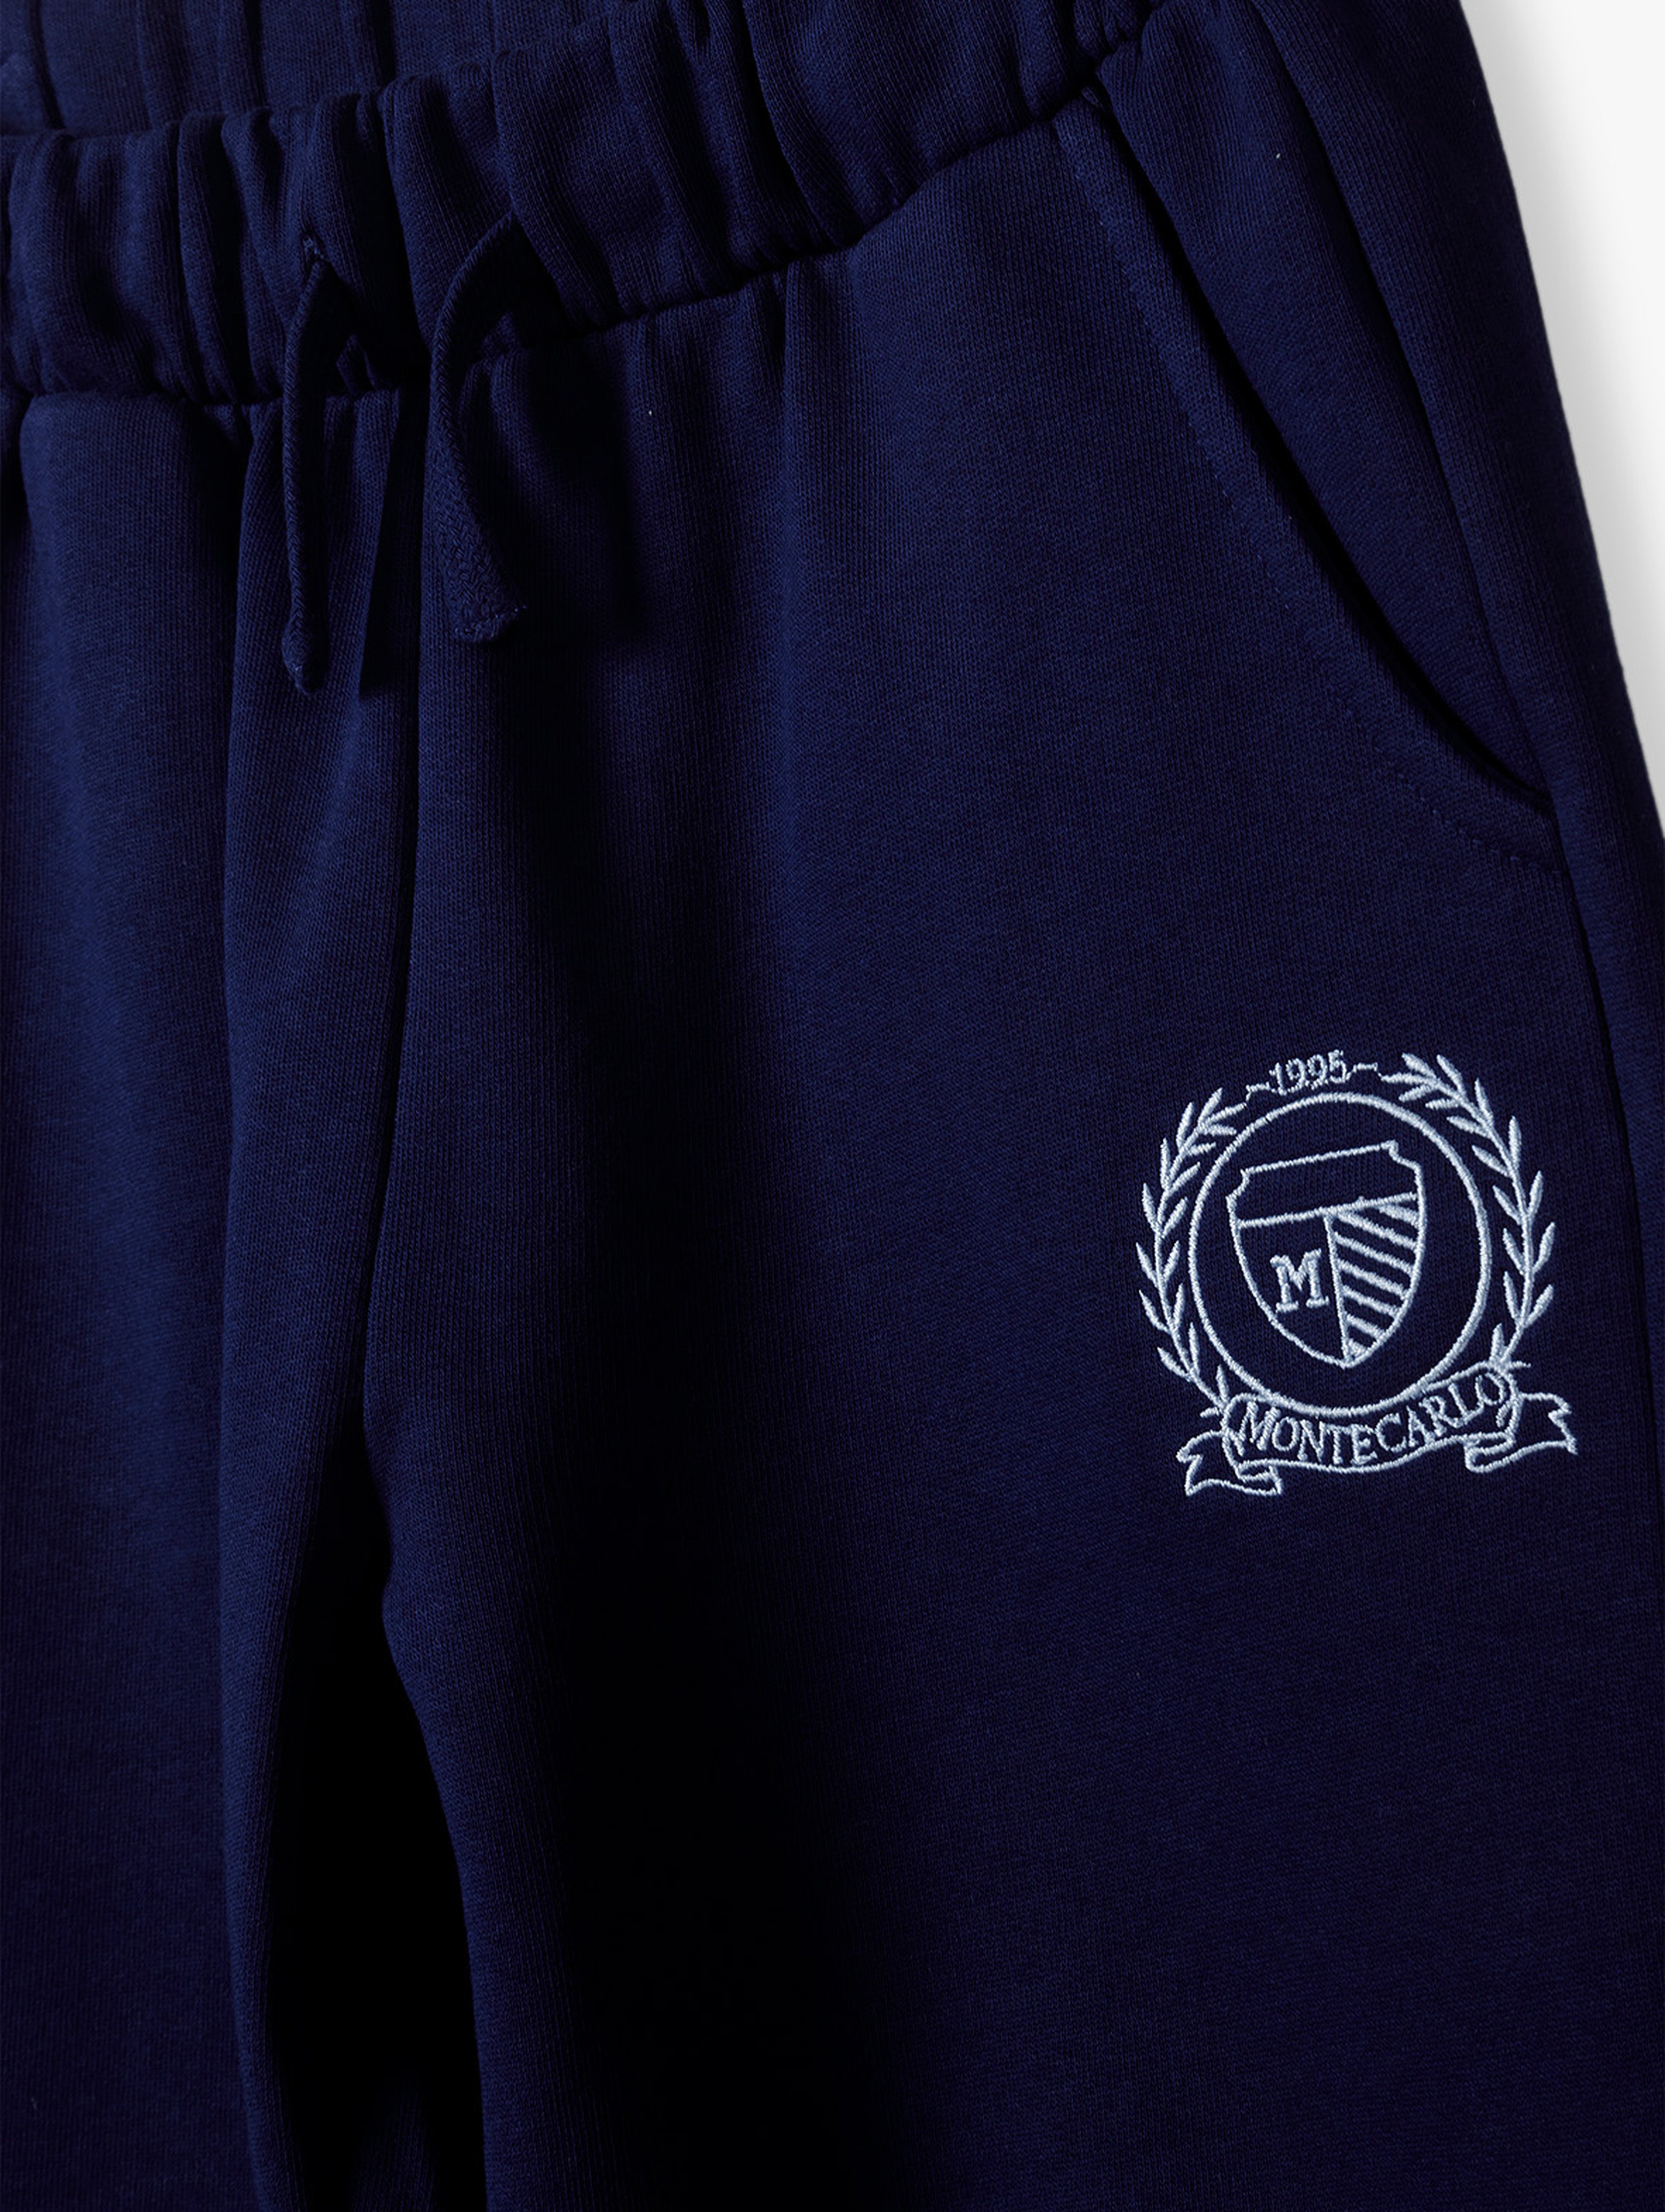 Spodnie dresowe 2pak - granatowe i niebieskie - Limited Edition